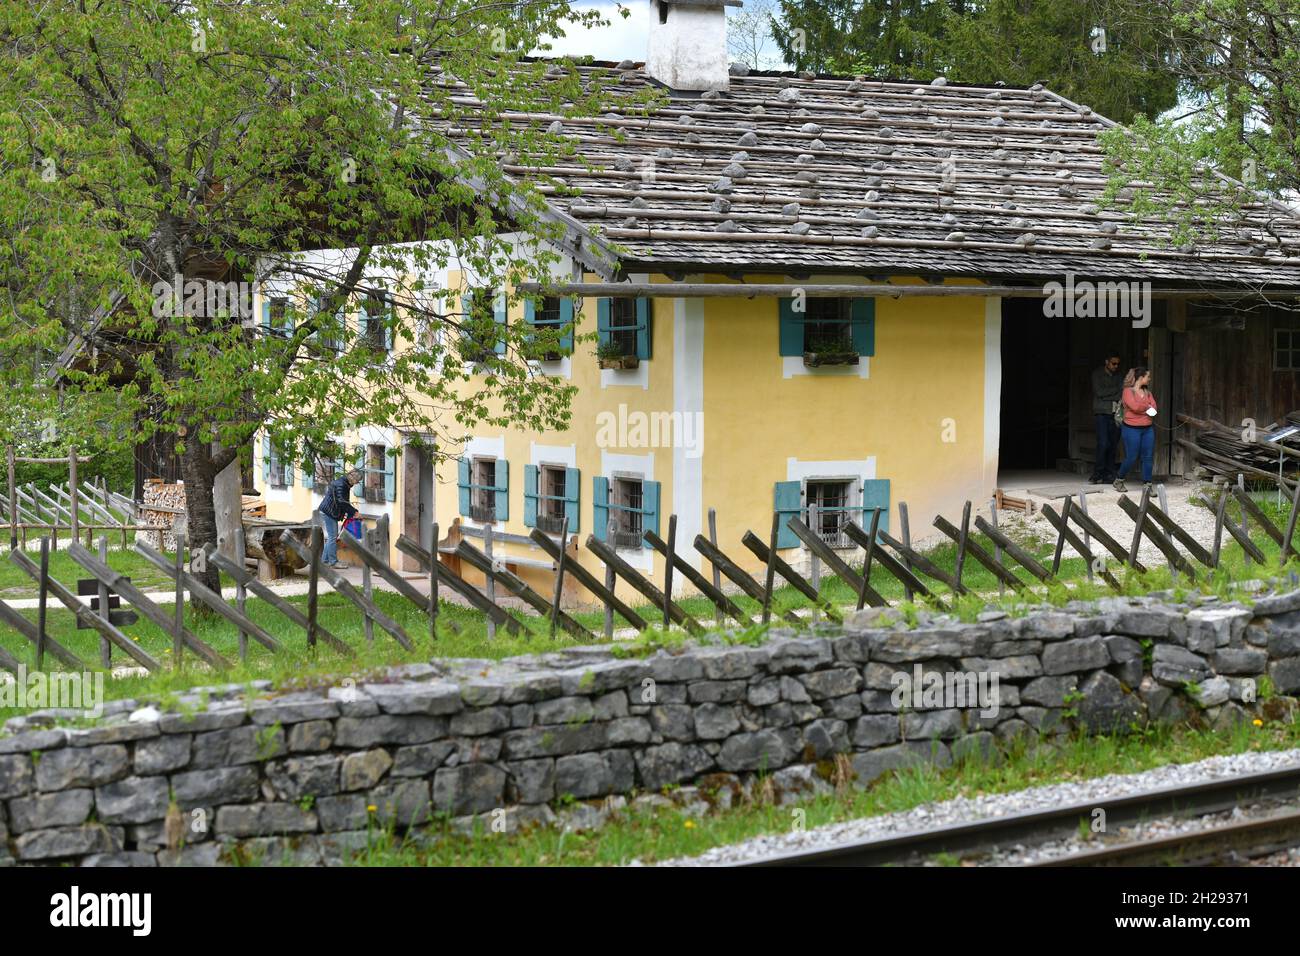 Freilichtmuseum mit alten Bauernhäusern und Gebäuden in Großgmain in Salzburg, Österreich, Europa - Freilichtmuseum mit alten Bauernhäusern und Gebäuden Stockfoto